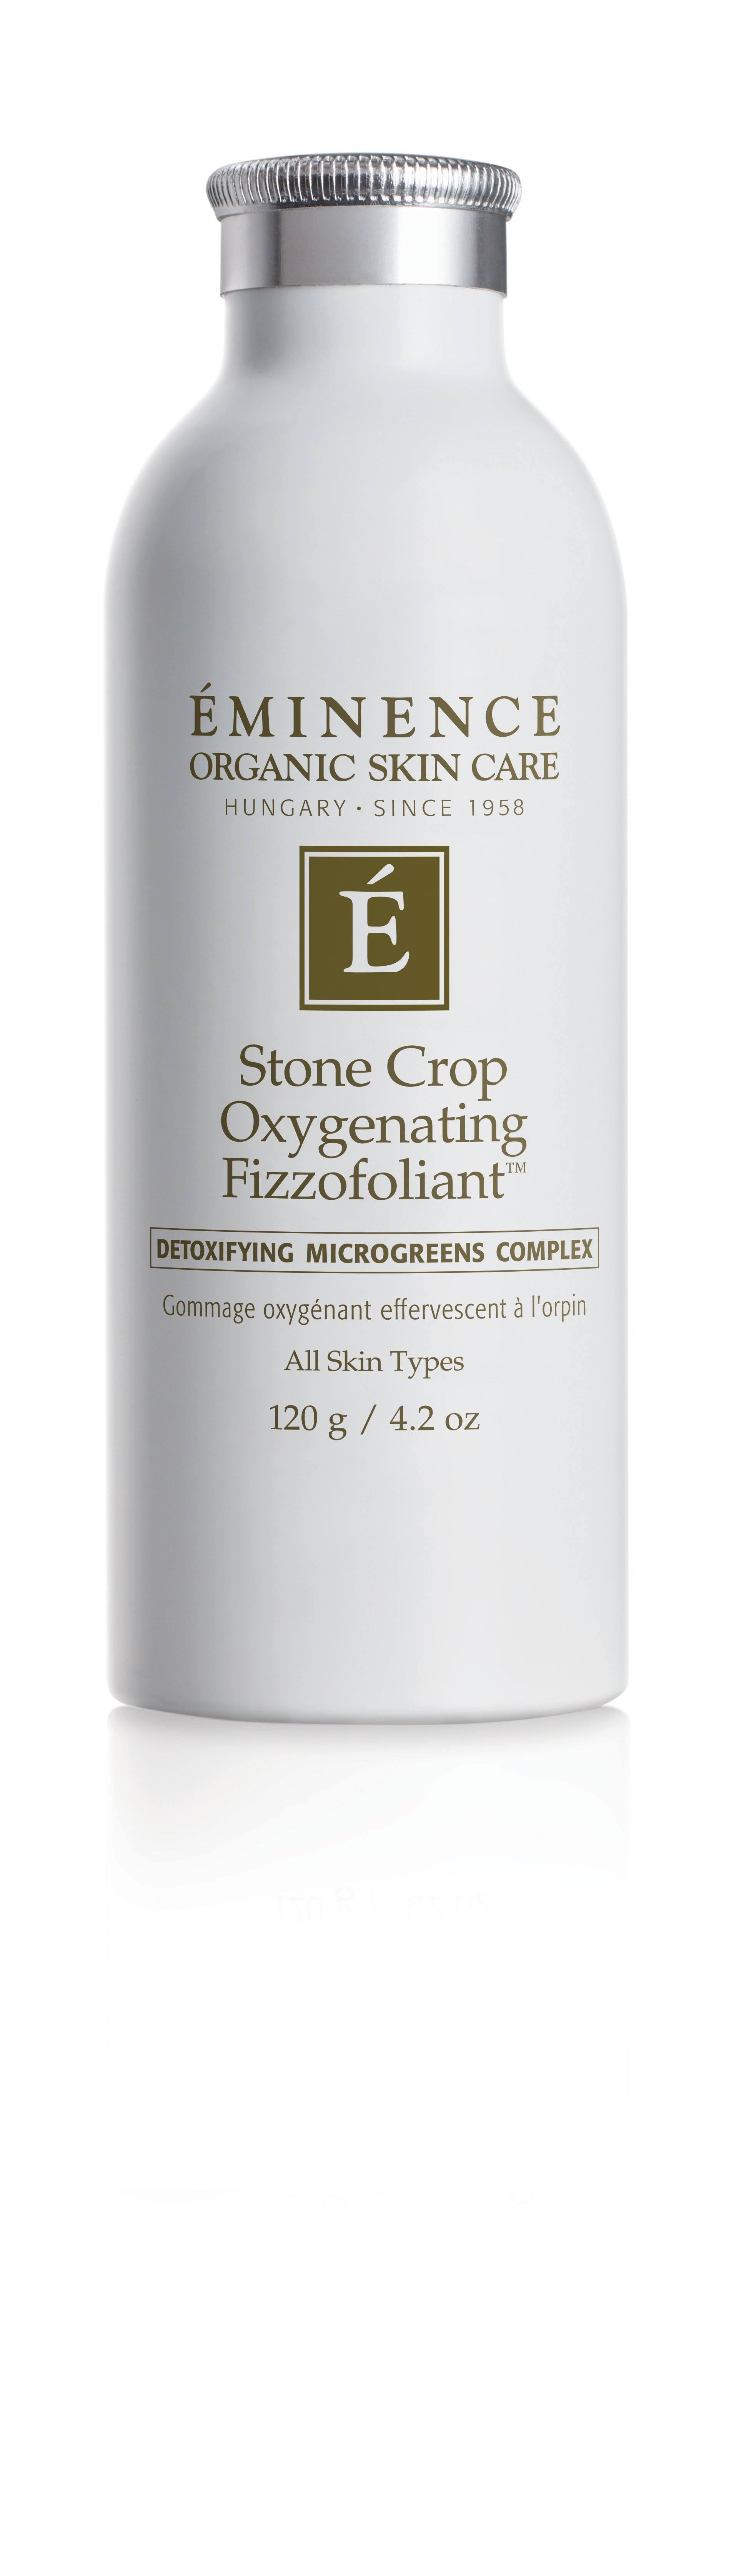 Eminence Stone Crop Oxygenating Fizzofoliant Treatment - 120g